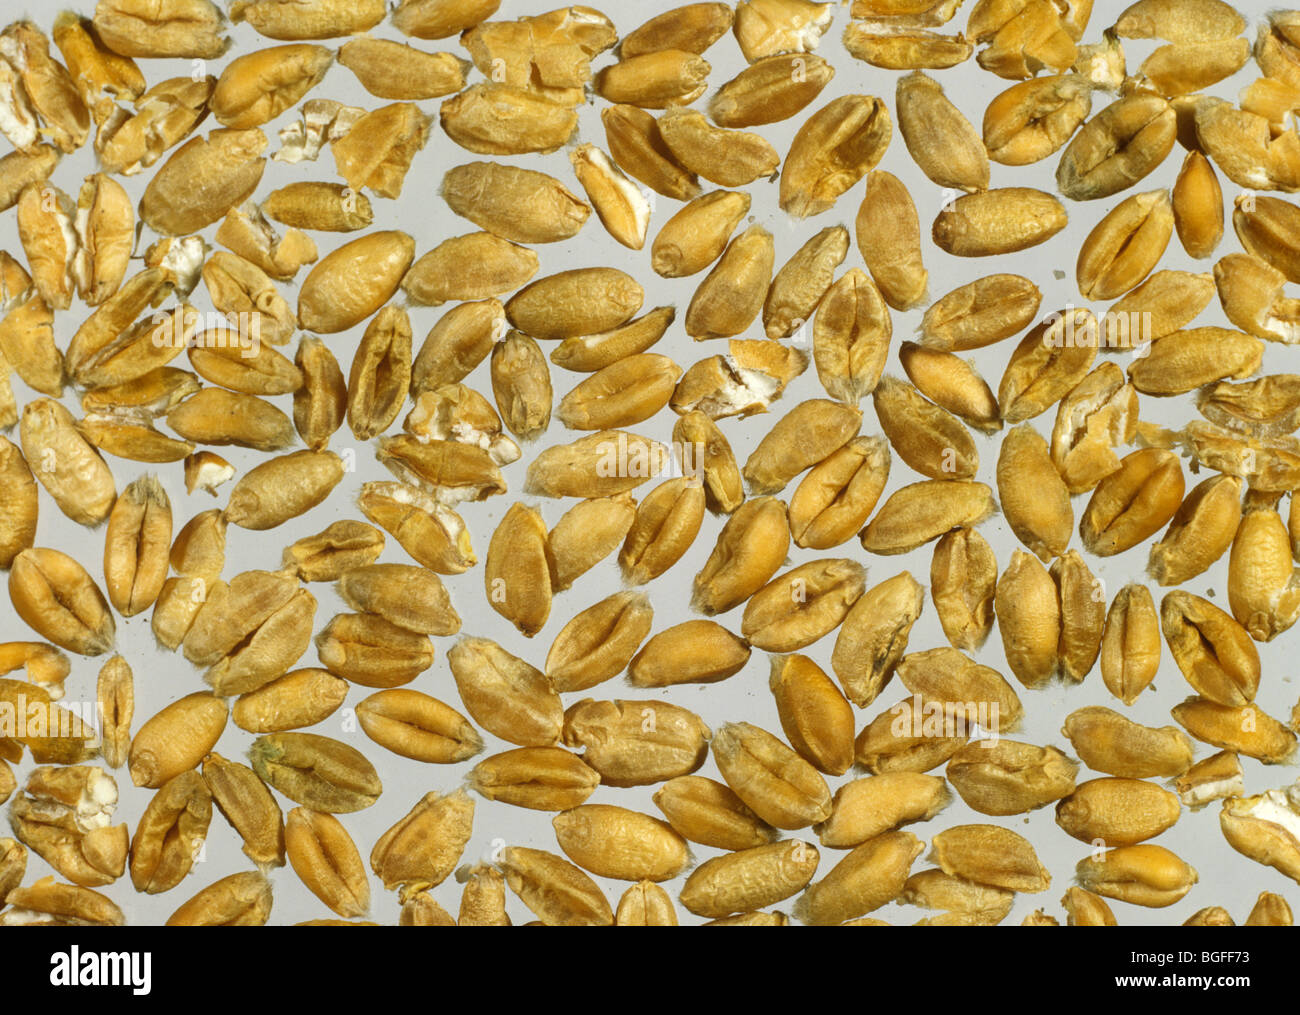 Los granos rotos en una muestra para análisis de trigo cosechado Foto de stock